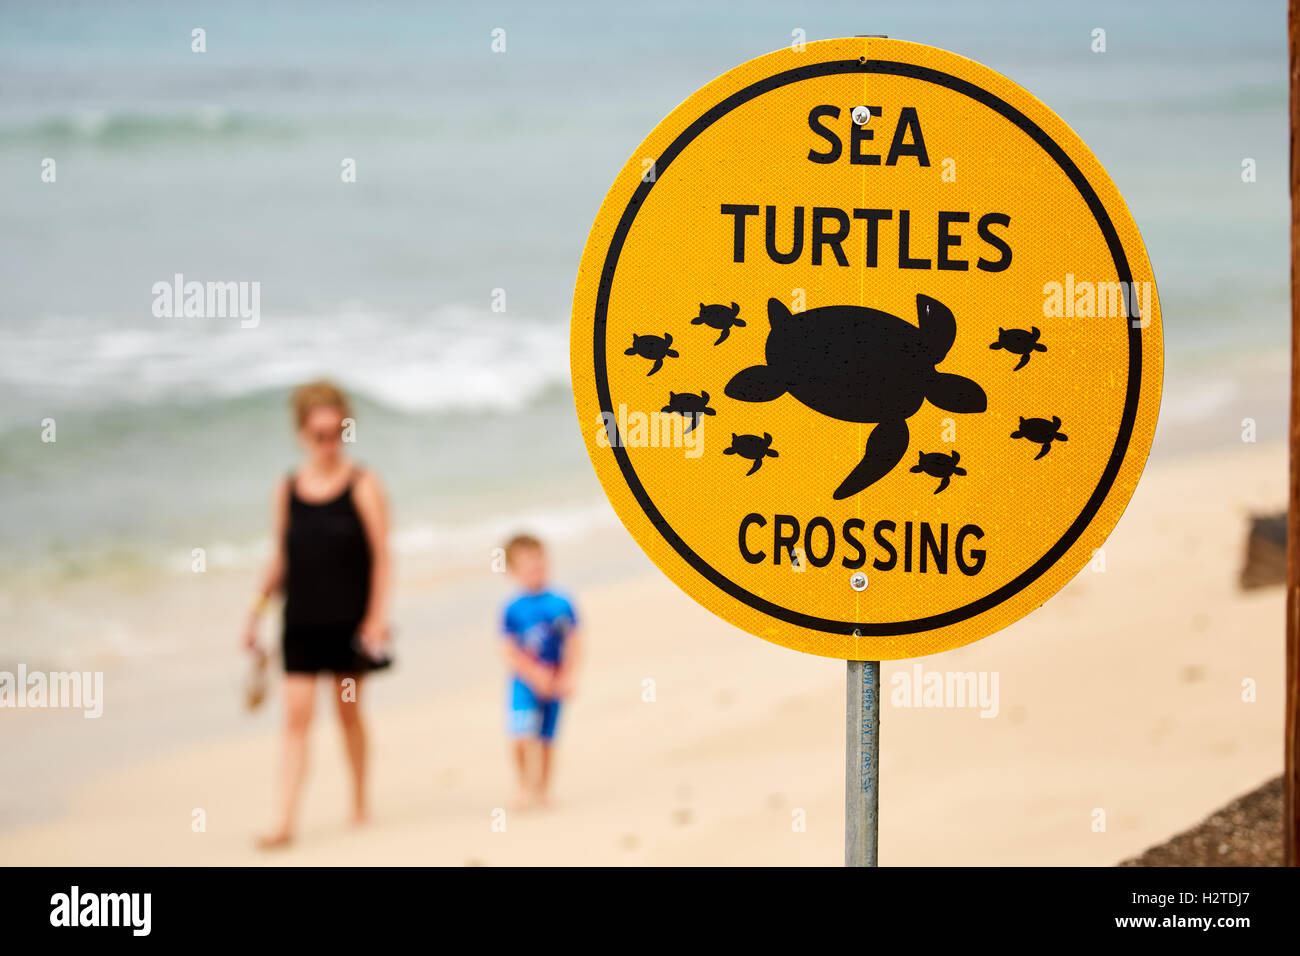 Barbados Meeresschildkröten crossing Schild Schilder Warnung Straßenverkehrsordnung offizielle Küste Strand Projekt Straße Seite Vorsicht fahren langsam co Stockfoto